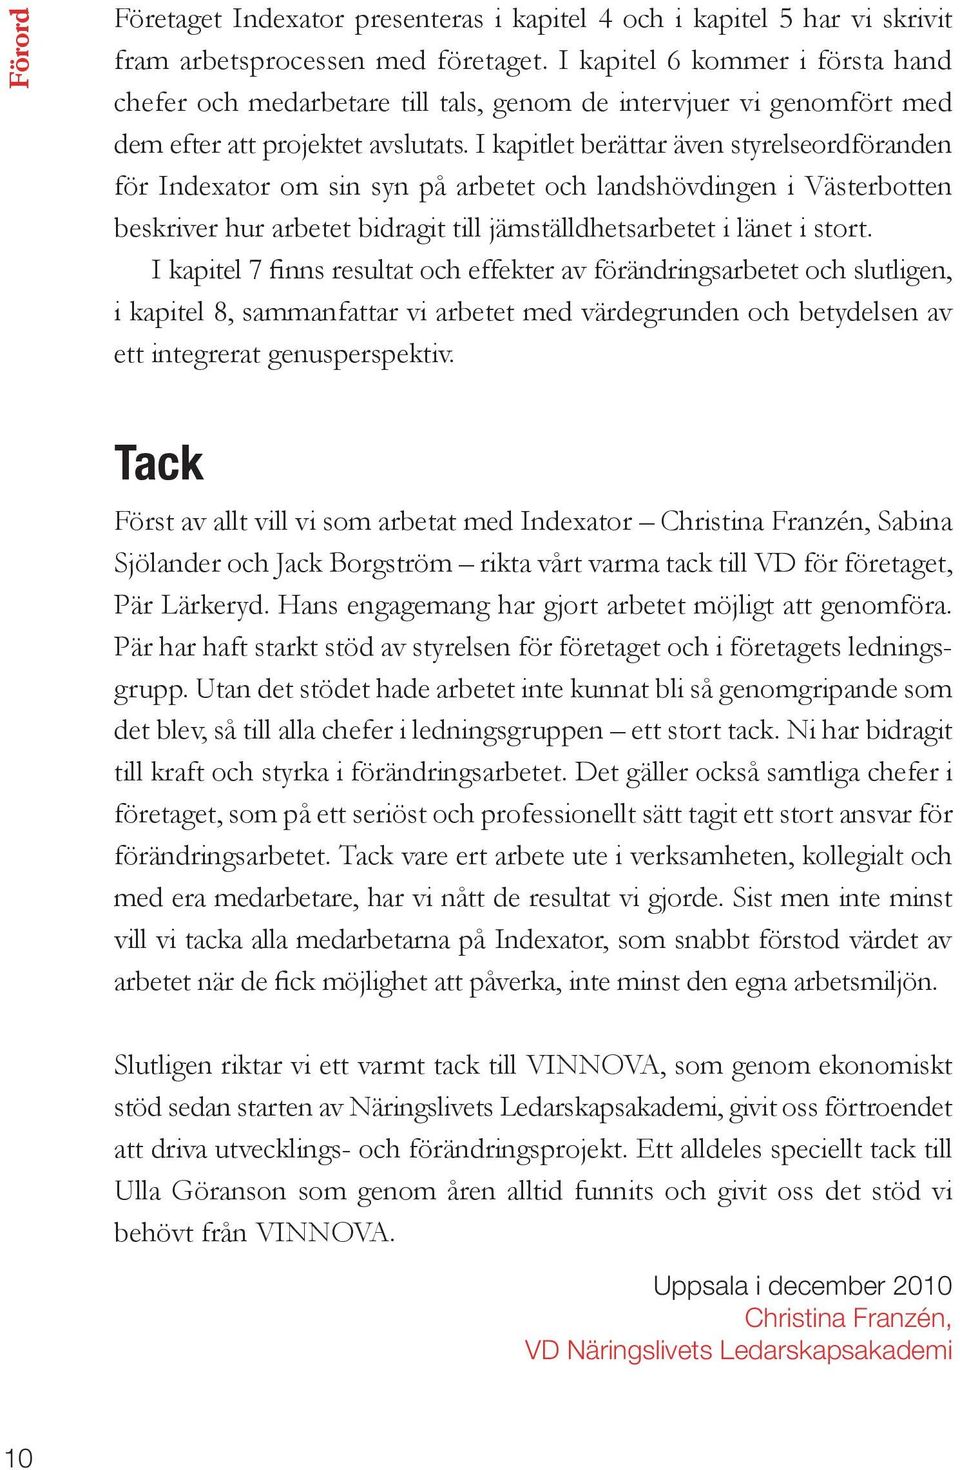 I kapitlet berättar även styrelseordföranden för Indexator om sin syn på arbetet och landshövdingen i Västerbotten beskriver hur arbetet bidragit till jämställdhetsarbetet i länet i stort.